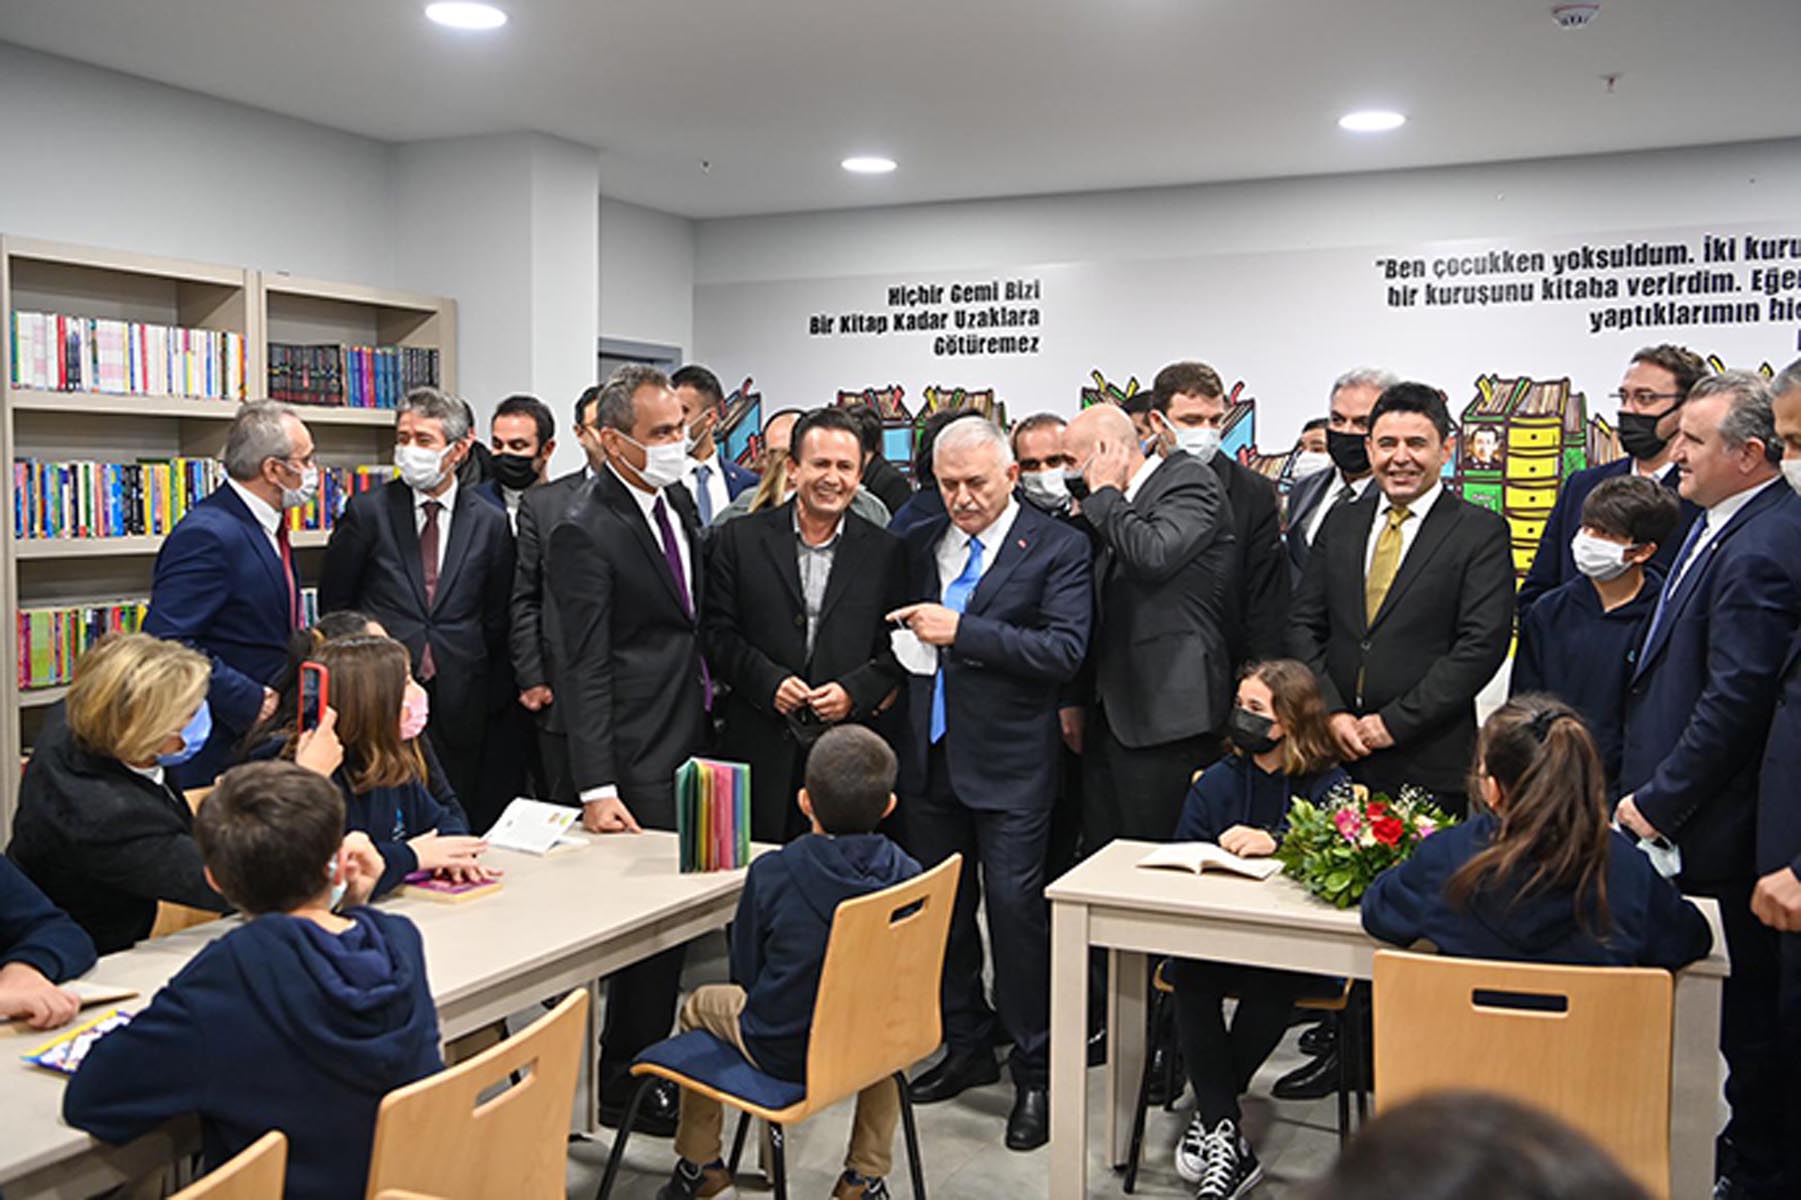 Tuzla’da okul yatırımları sürüyor: Tuzla GİSBİR Ortaokulu törenle açıldı